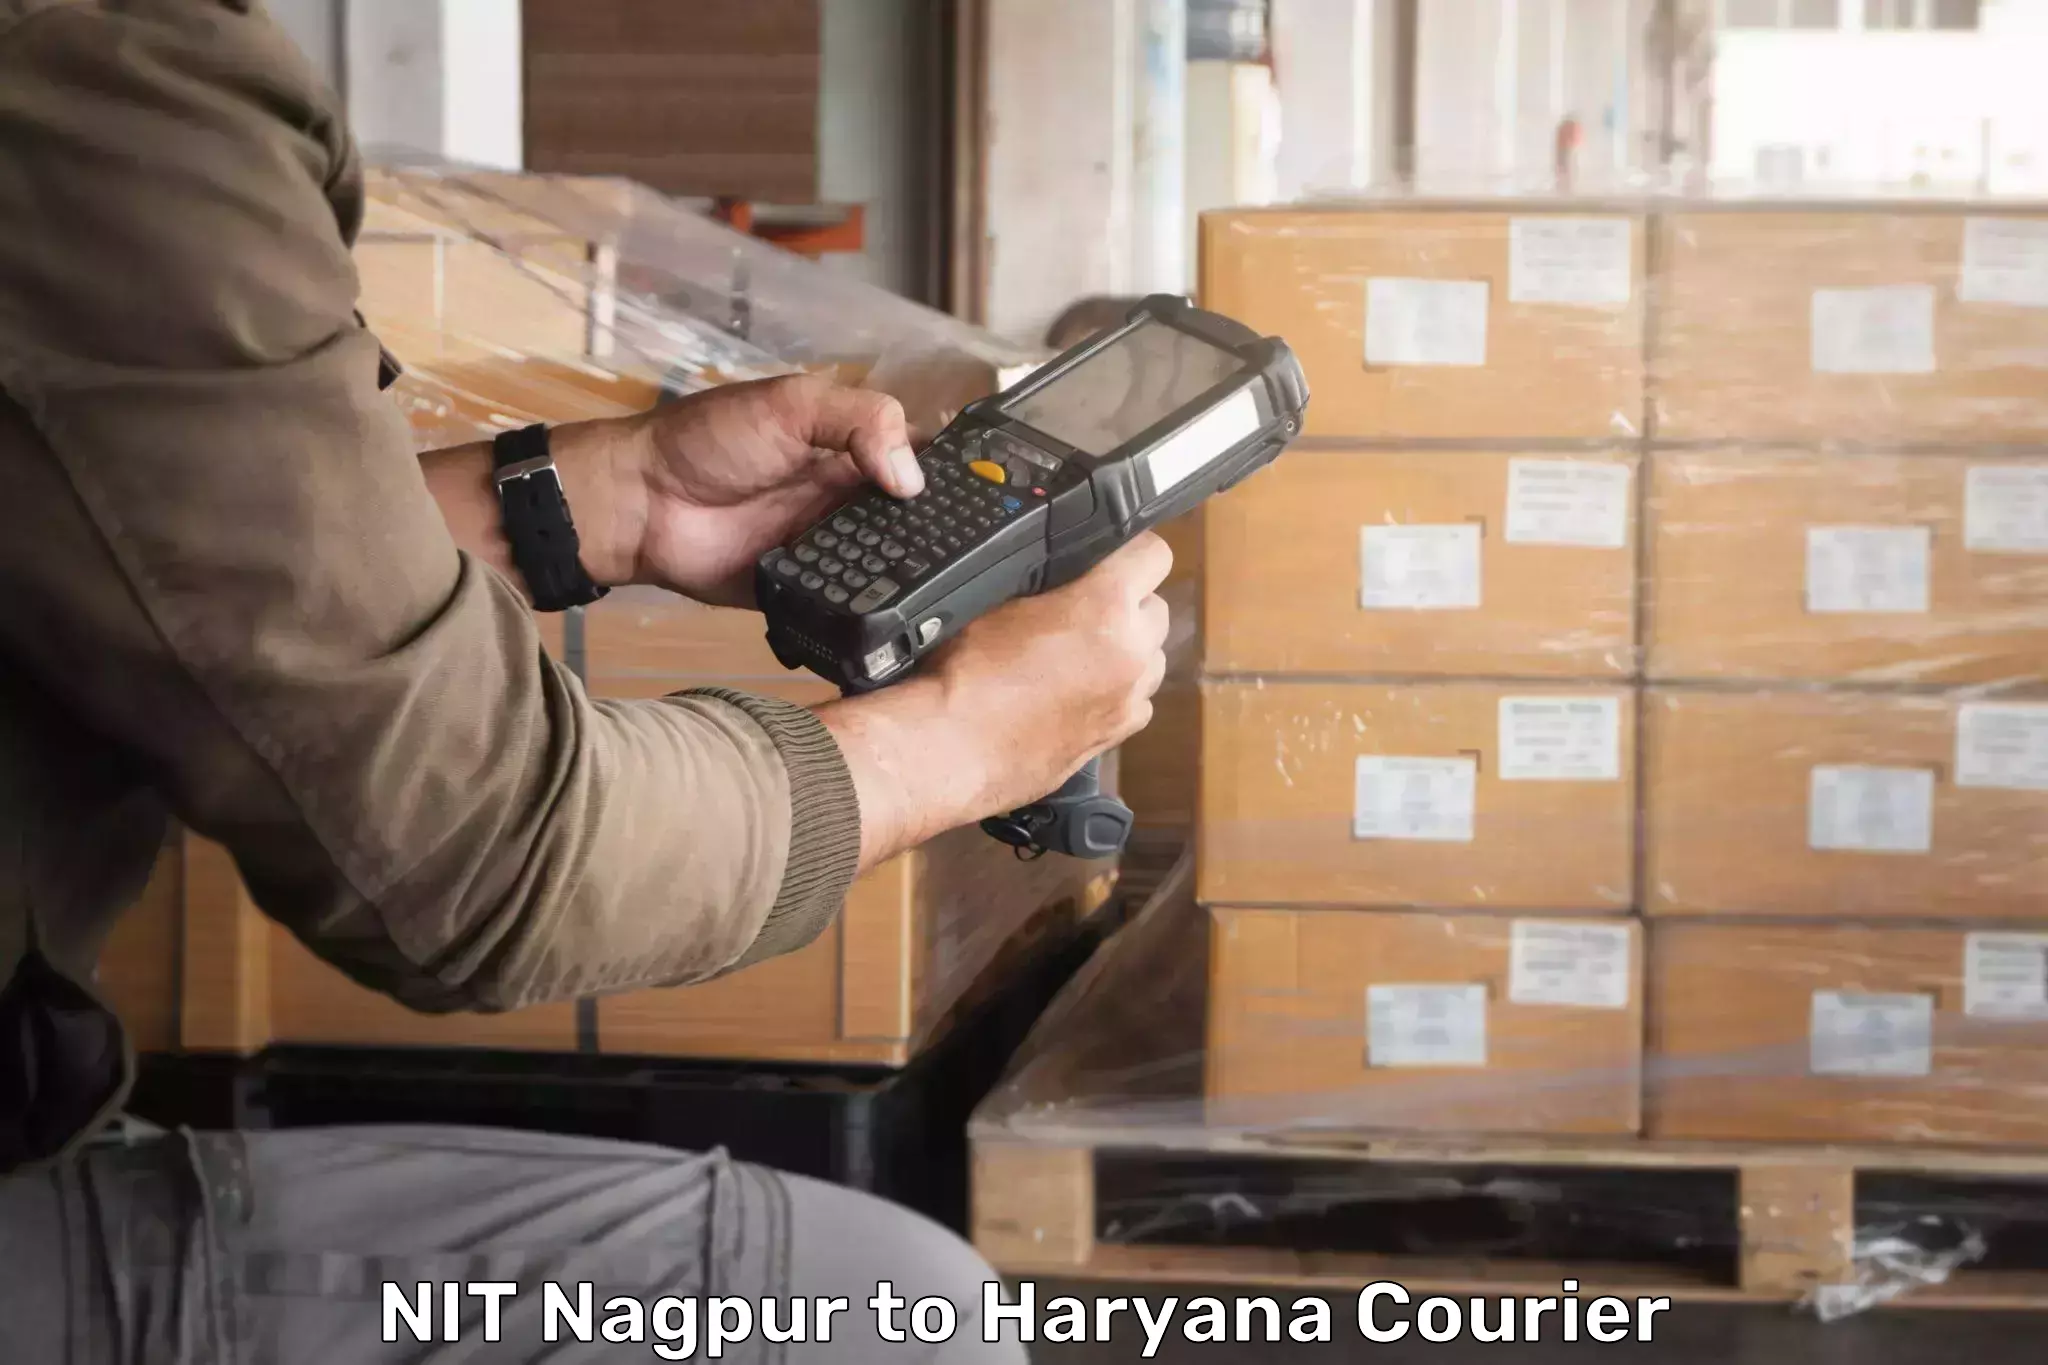 Express logistics service NIT Nagpur to NCR Haryana